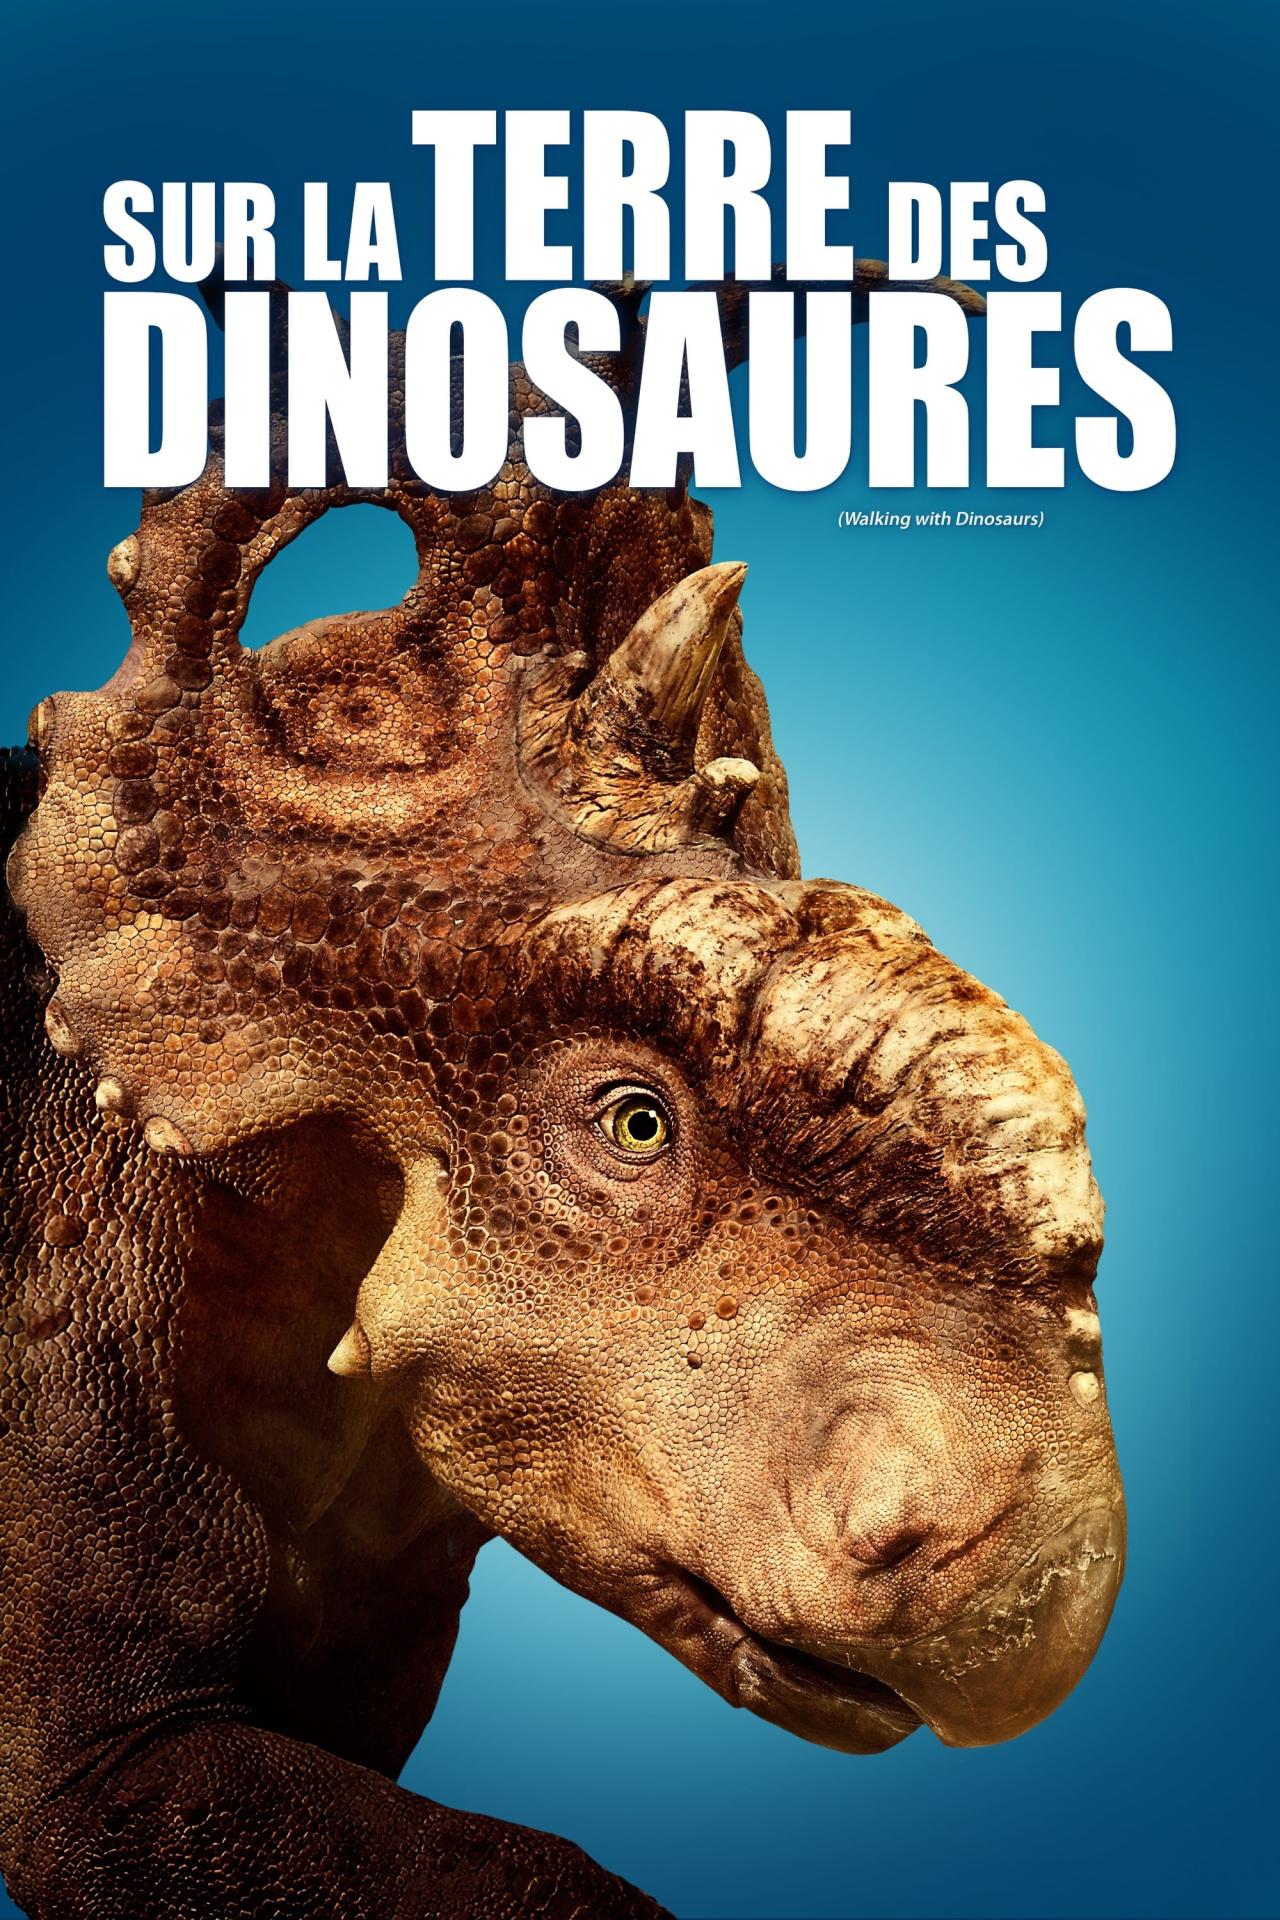 Sur la terre des dinosaures est-il disponible sur Netflix ou autre ?